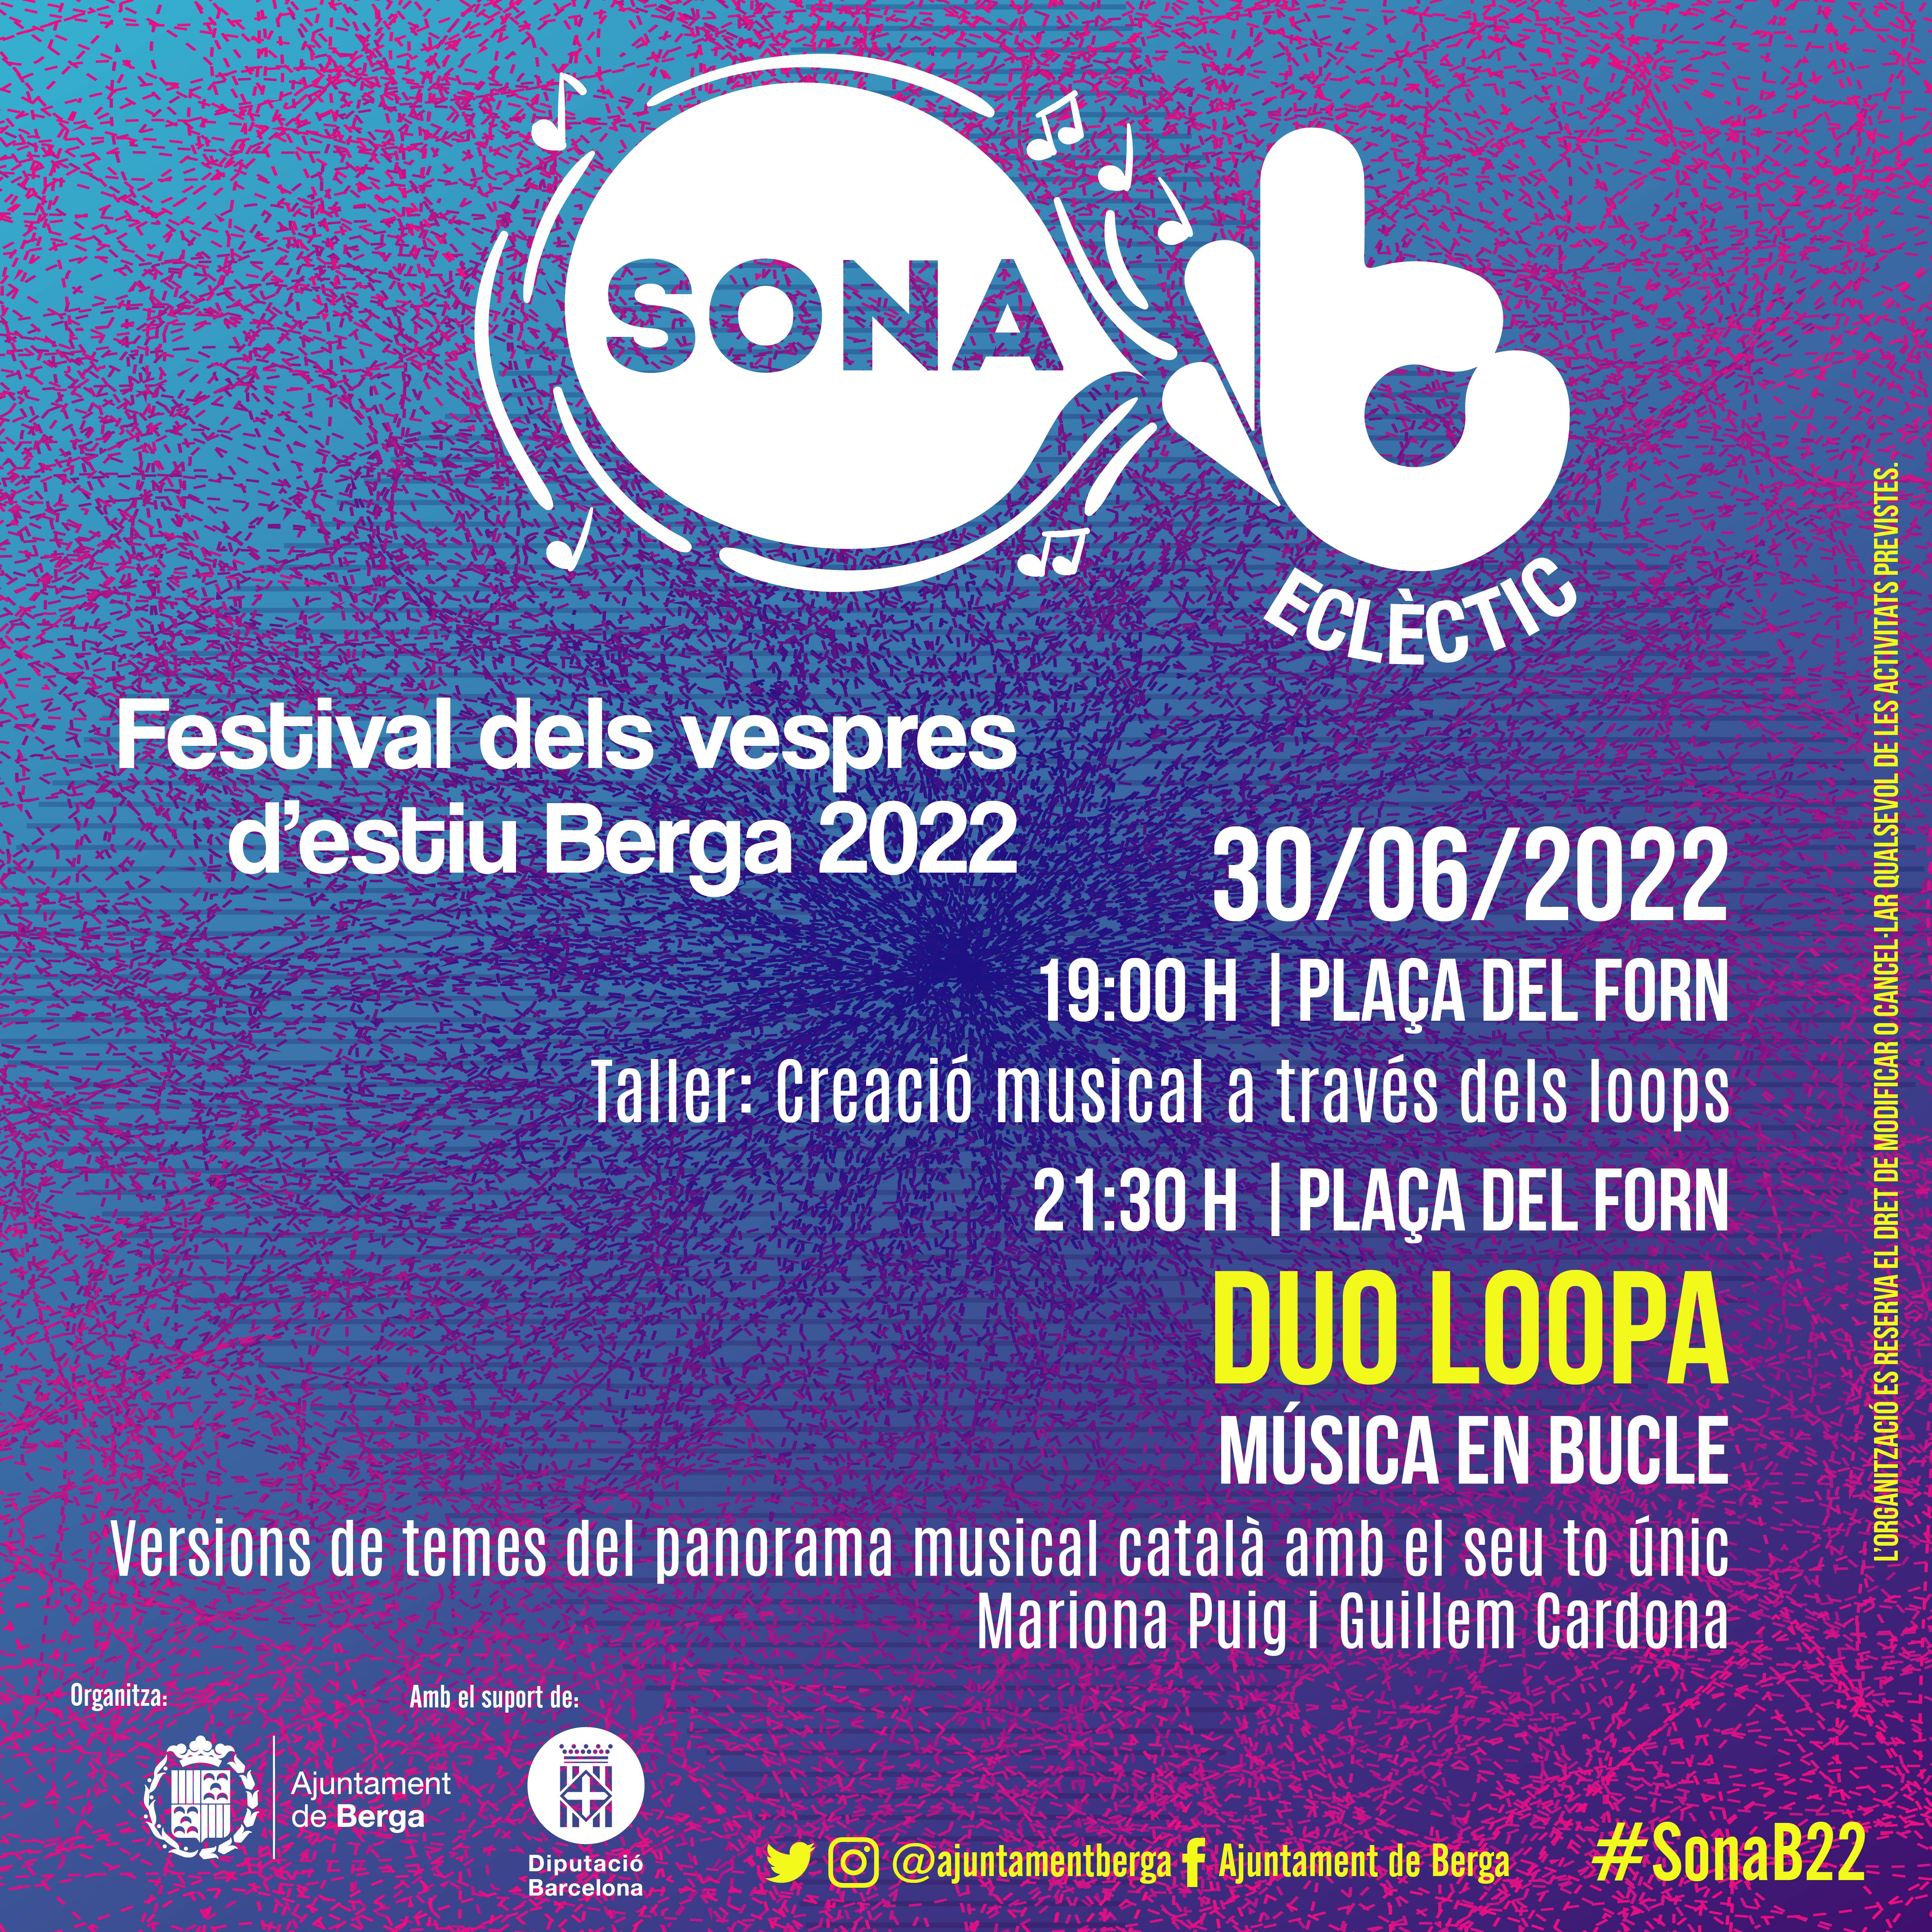 SonaB Eclèctic: Duo Loopa